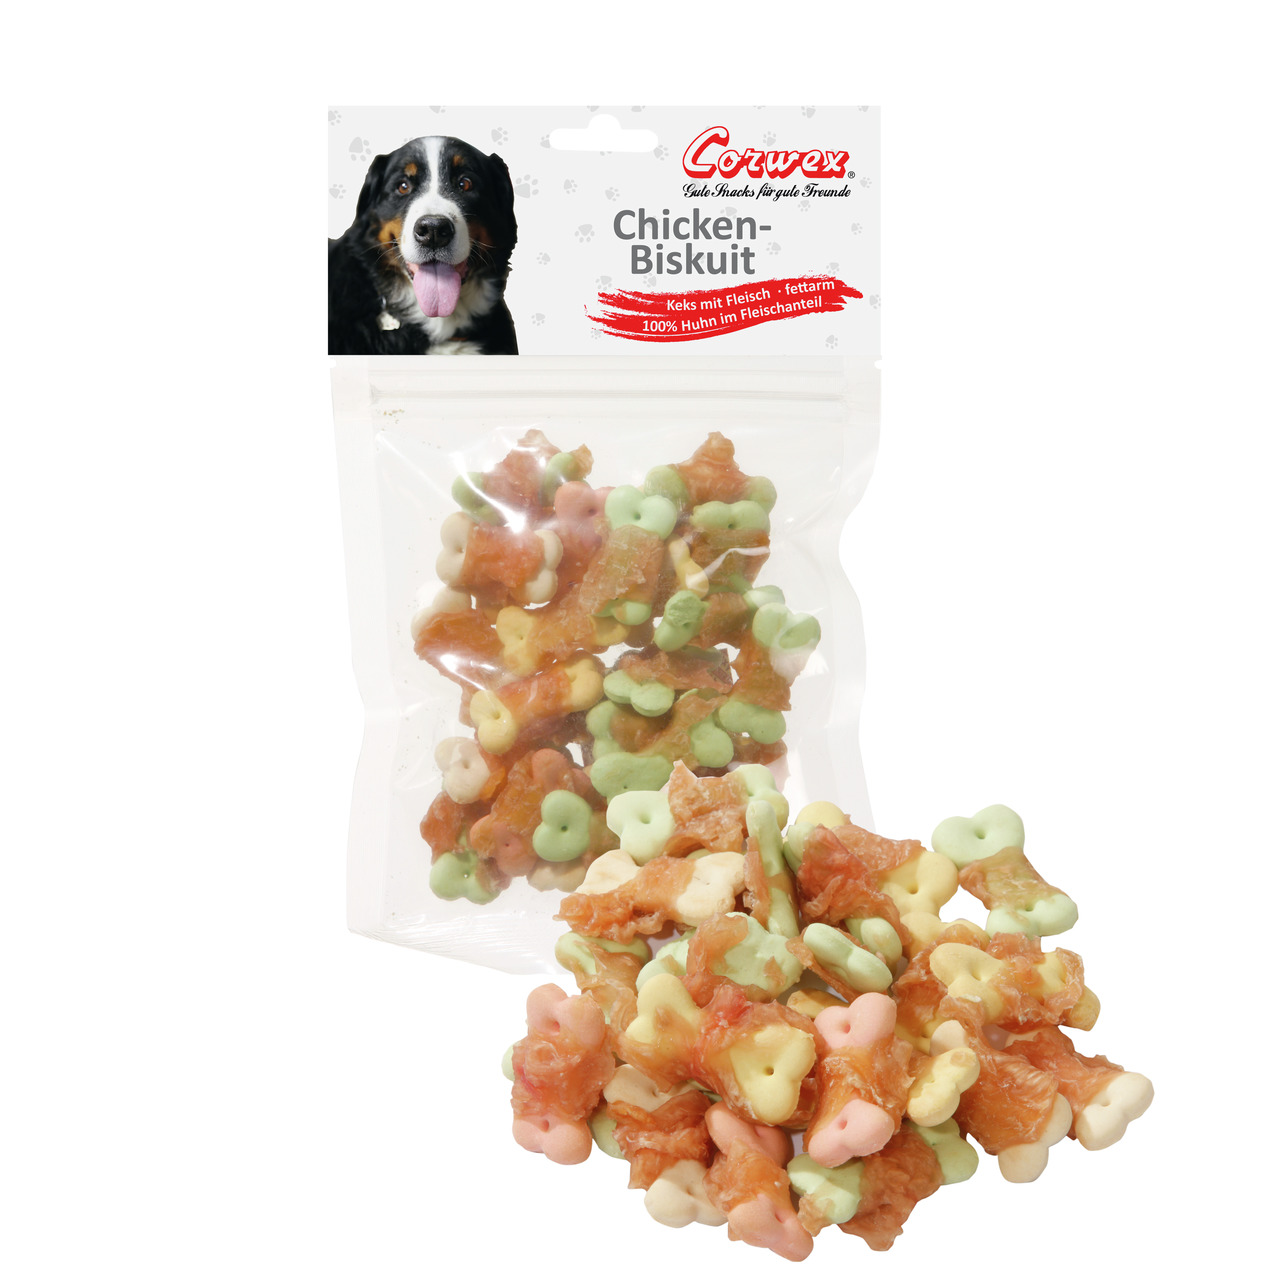 Corwex Chicken-Biskuit Hunde Snack 70 g